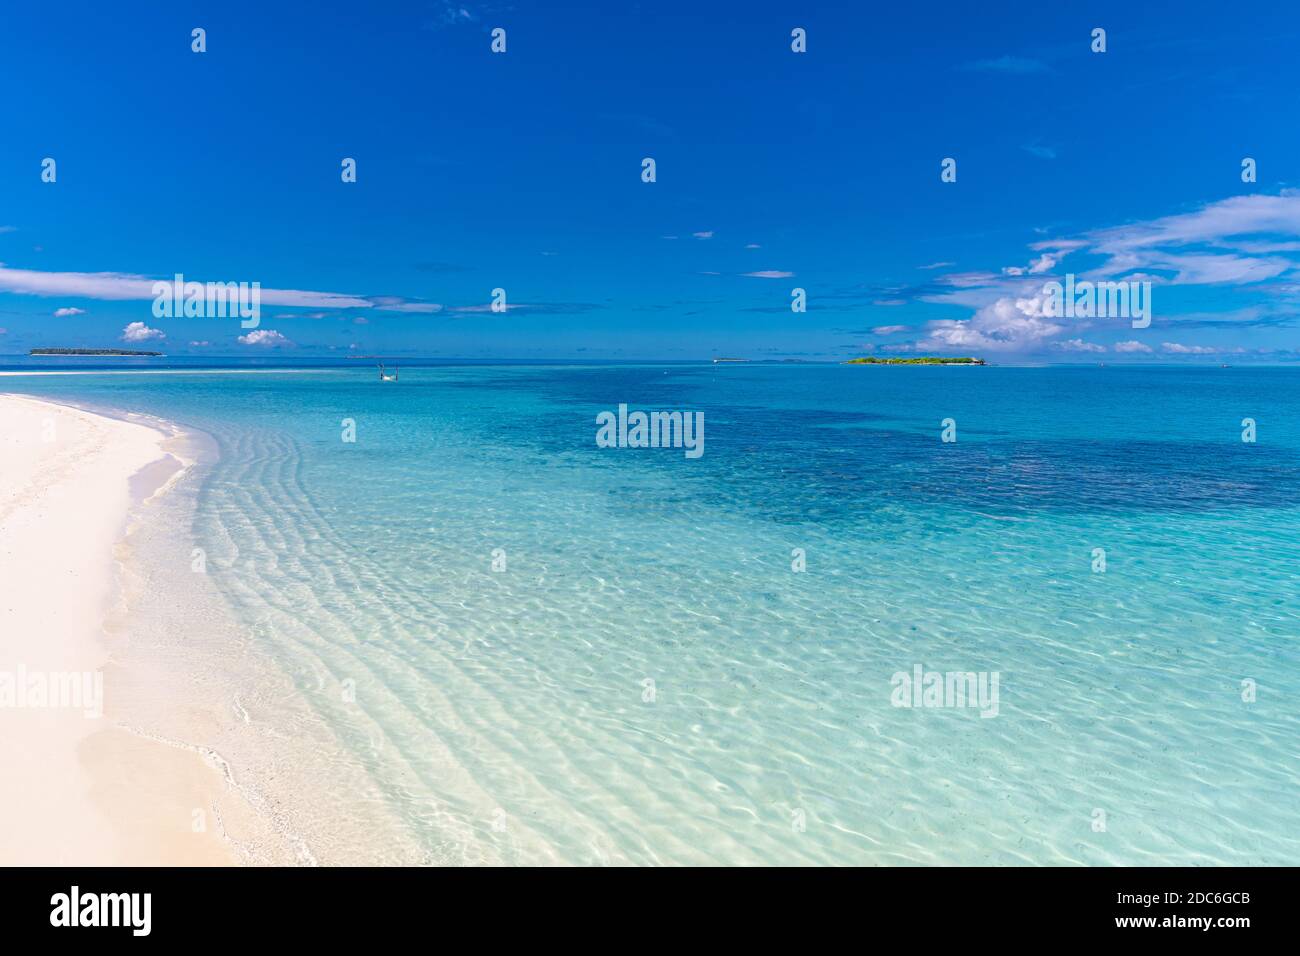 Plage tranquille. Paysage exotique de plage tropicale. Conception de vacances d'été concept, vagues, horizon de mer sur sable blanc avec ciel bleu. Banque D'Images